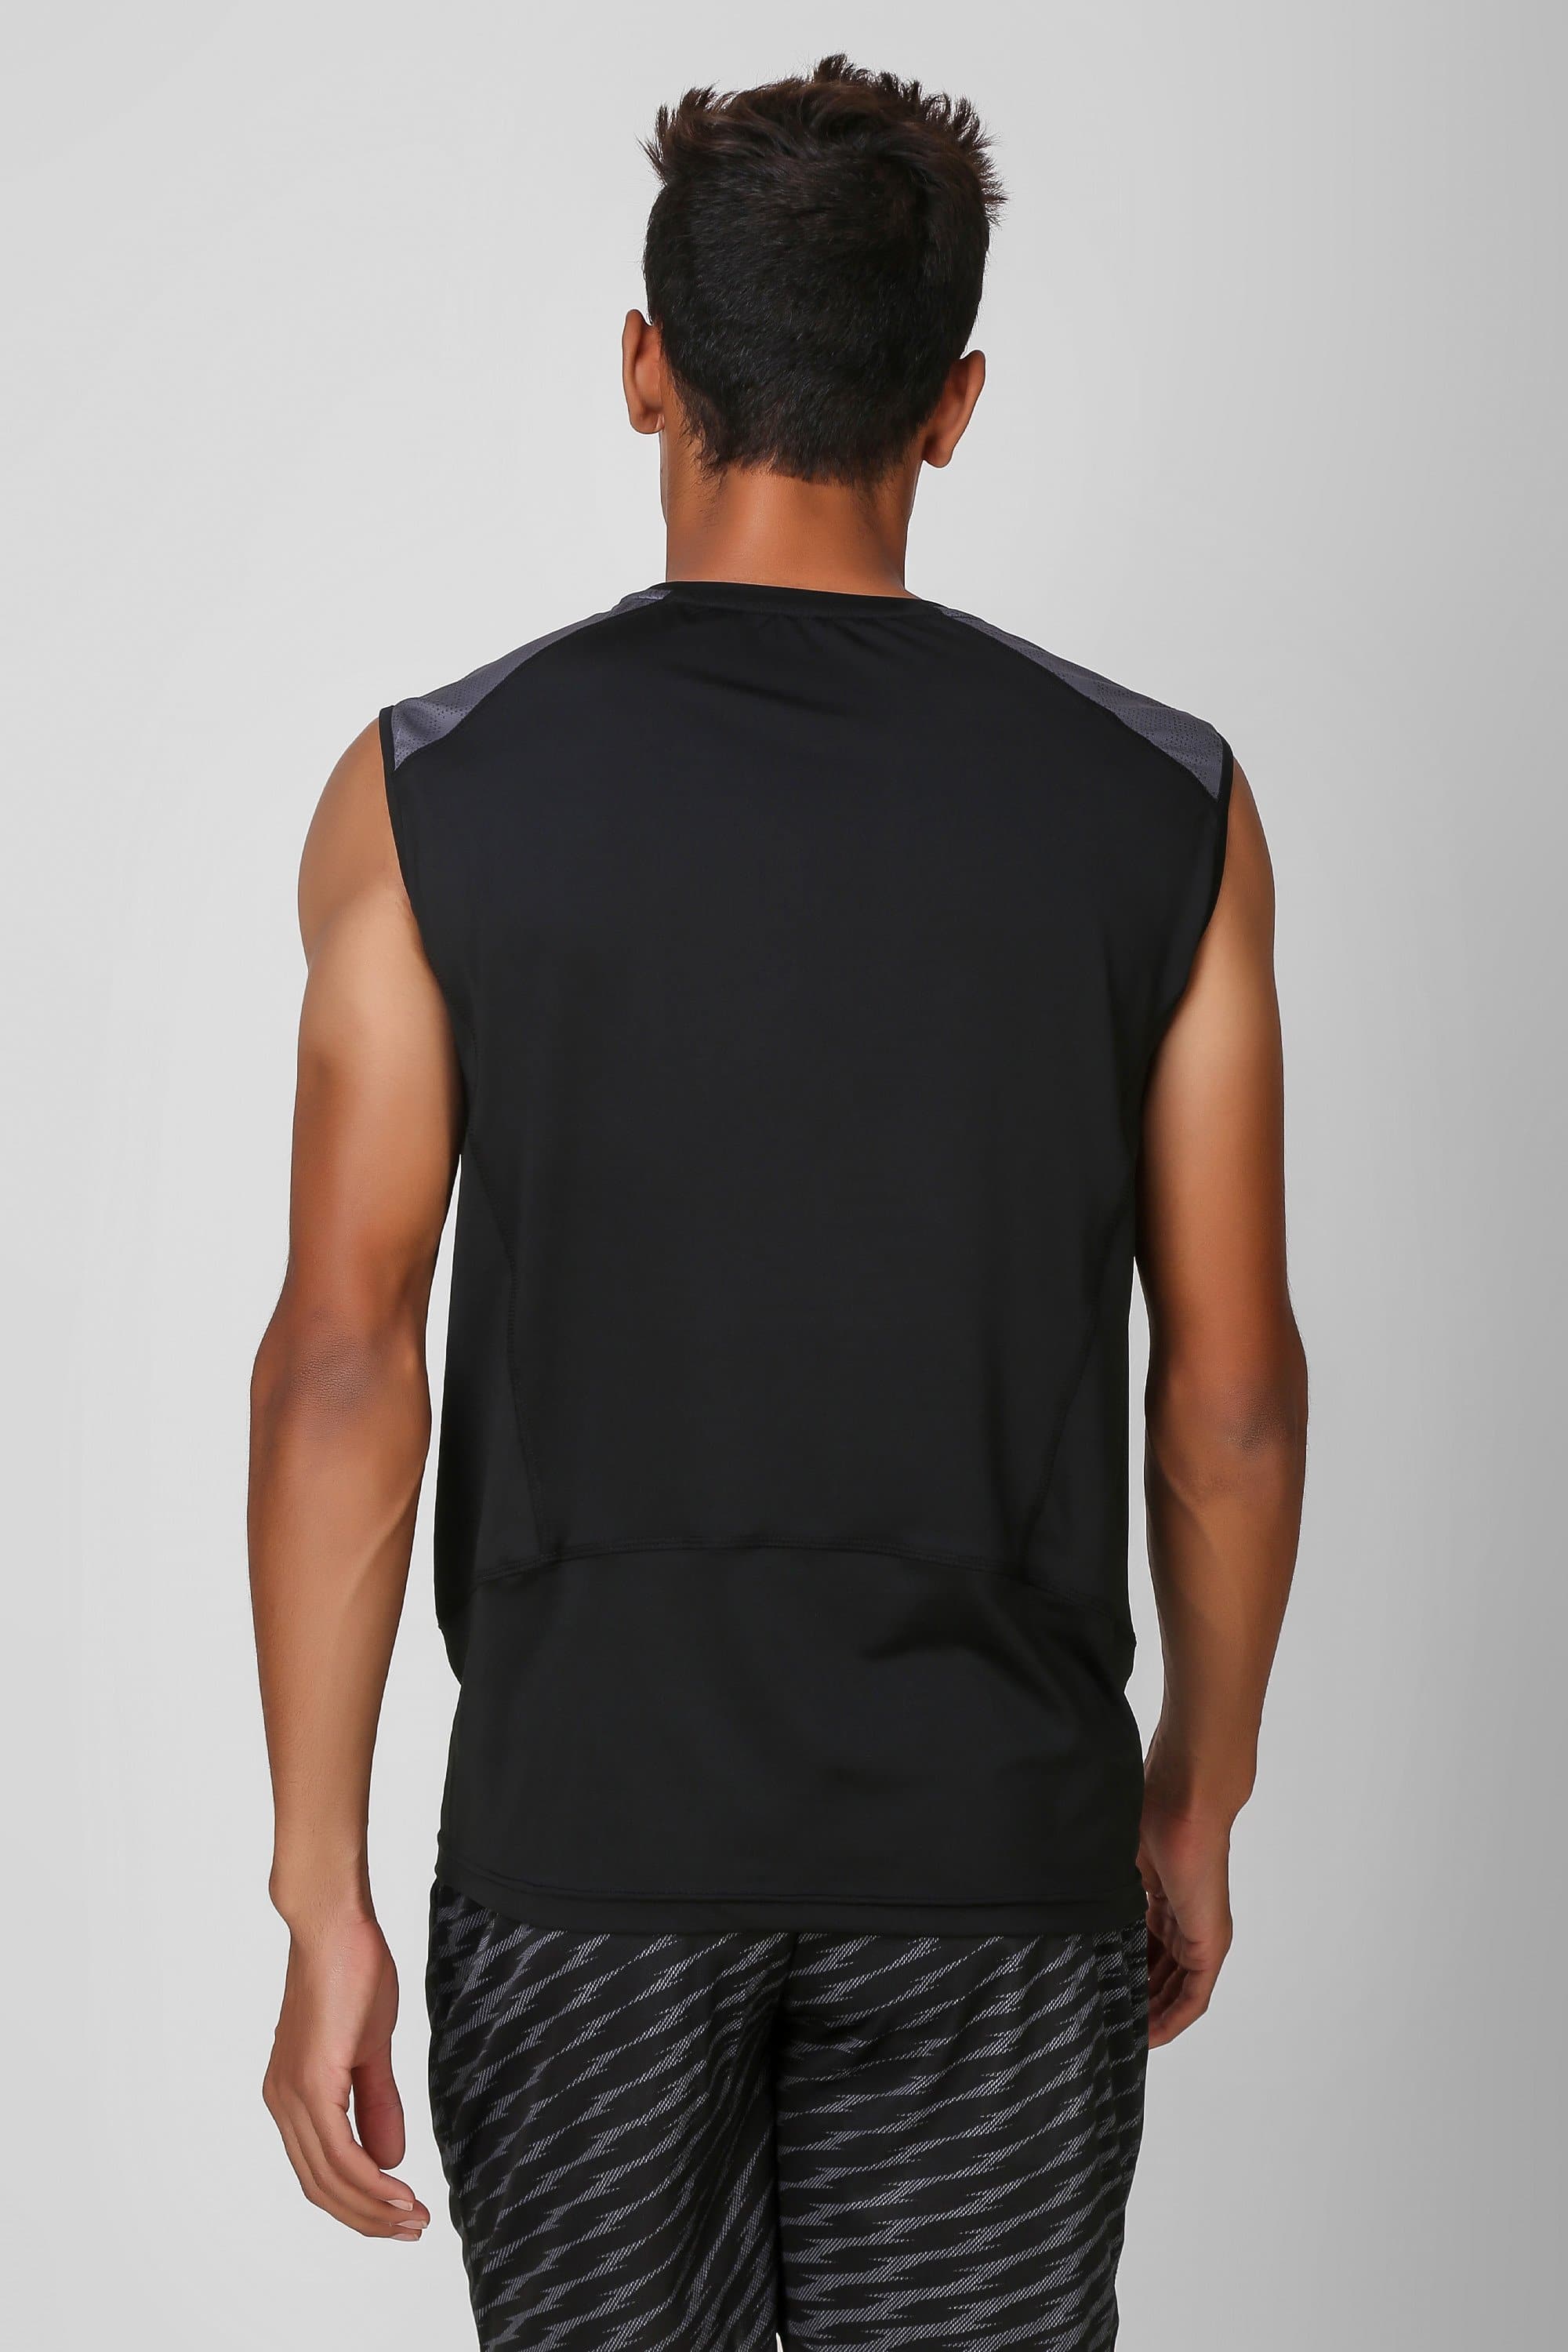 Camo Print Stretchable Sleeveless Tshirt 1